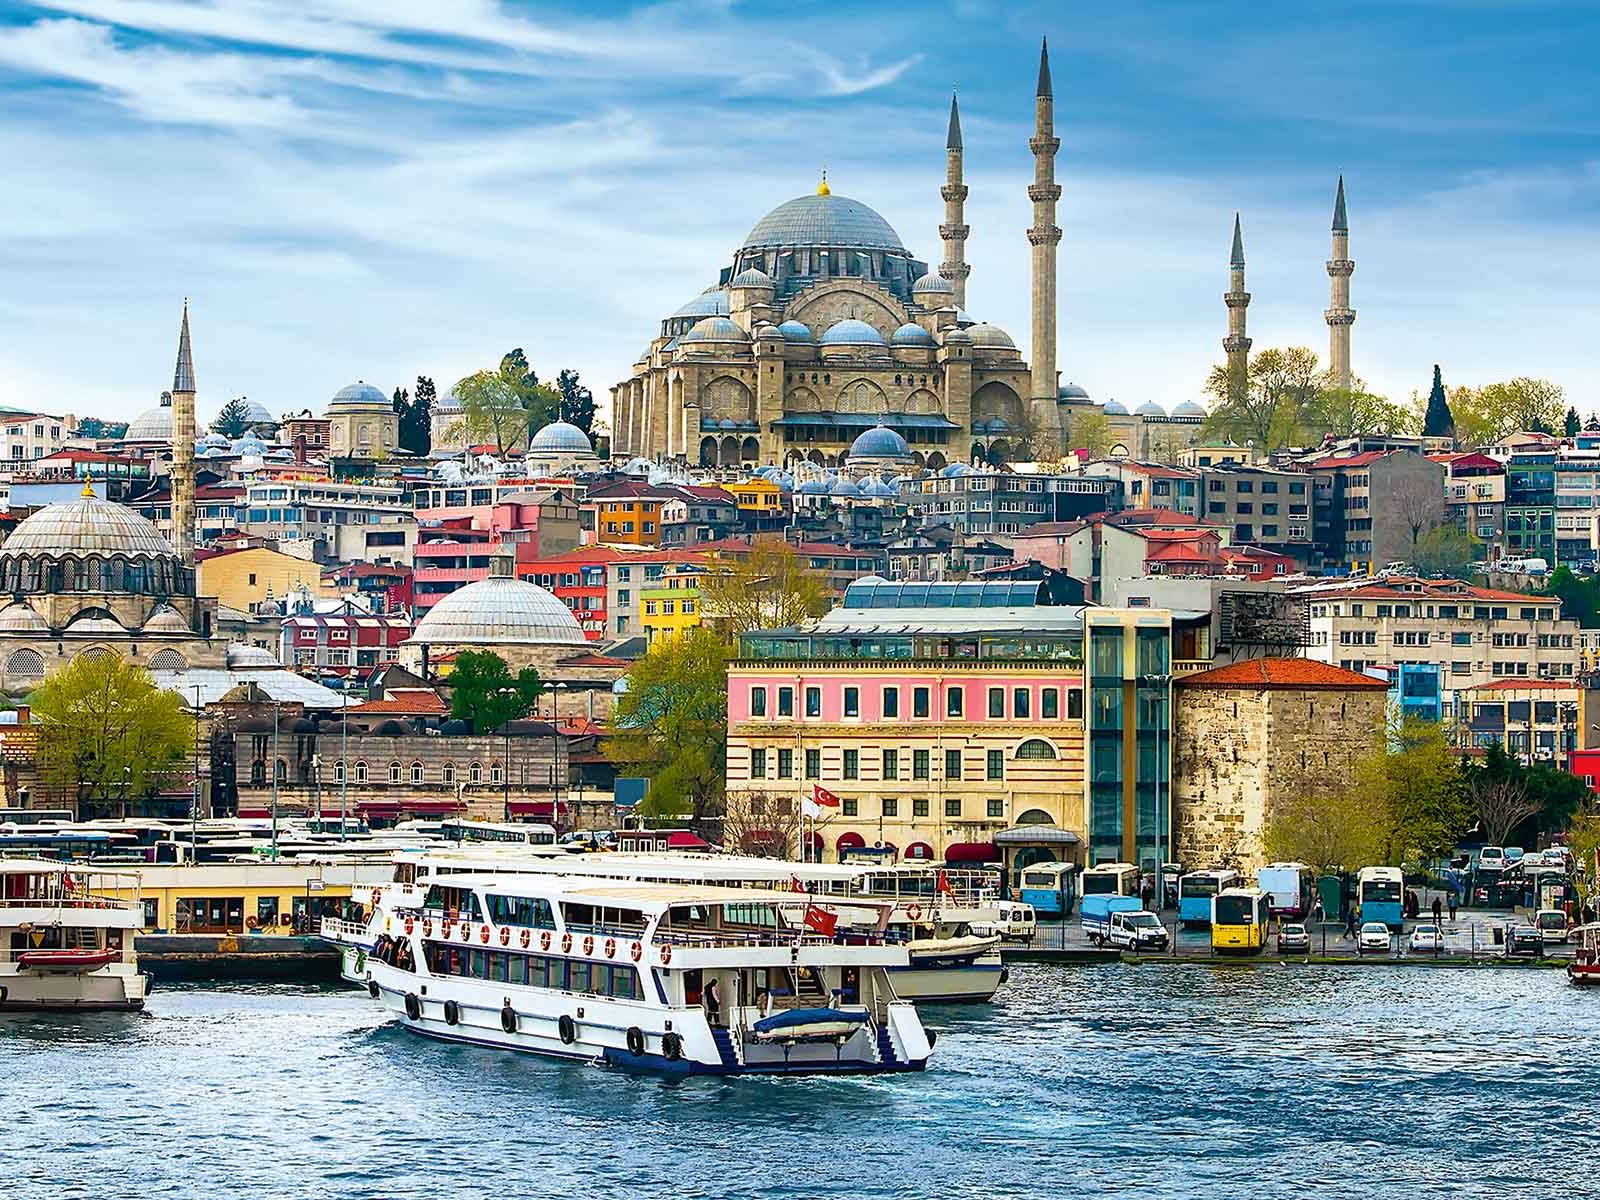 Die Süleymaniye Moschee wurde im Auftrag von Suleyman dem Prächtigen erbaut und ist eines der stolzesten Bauwerke Istanbuls.